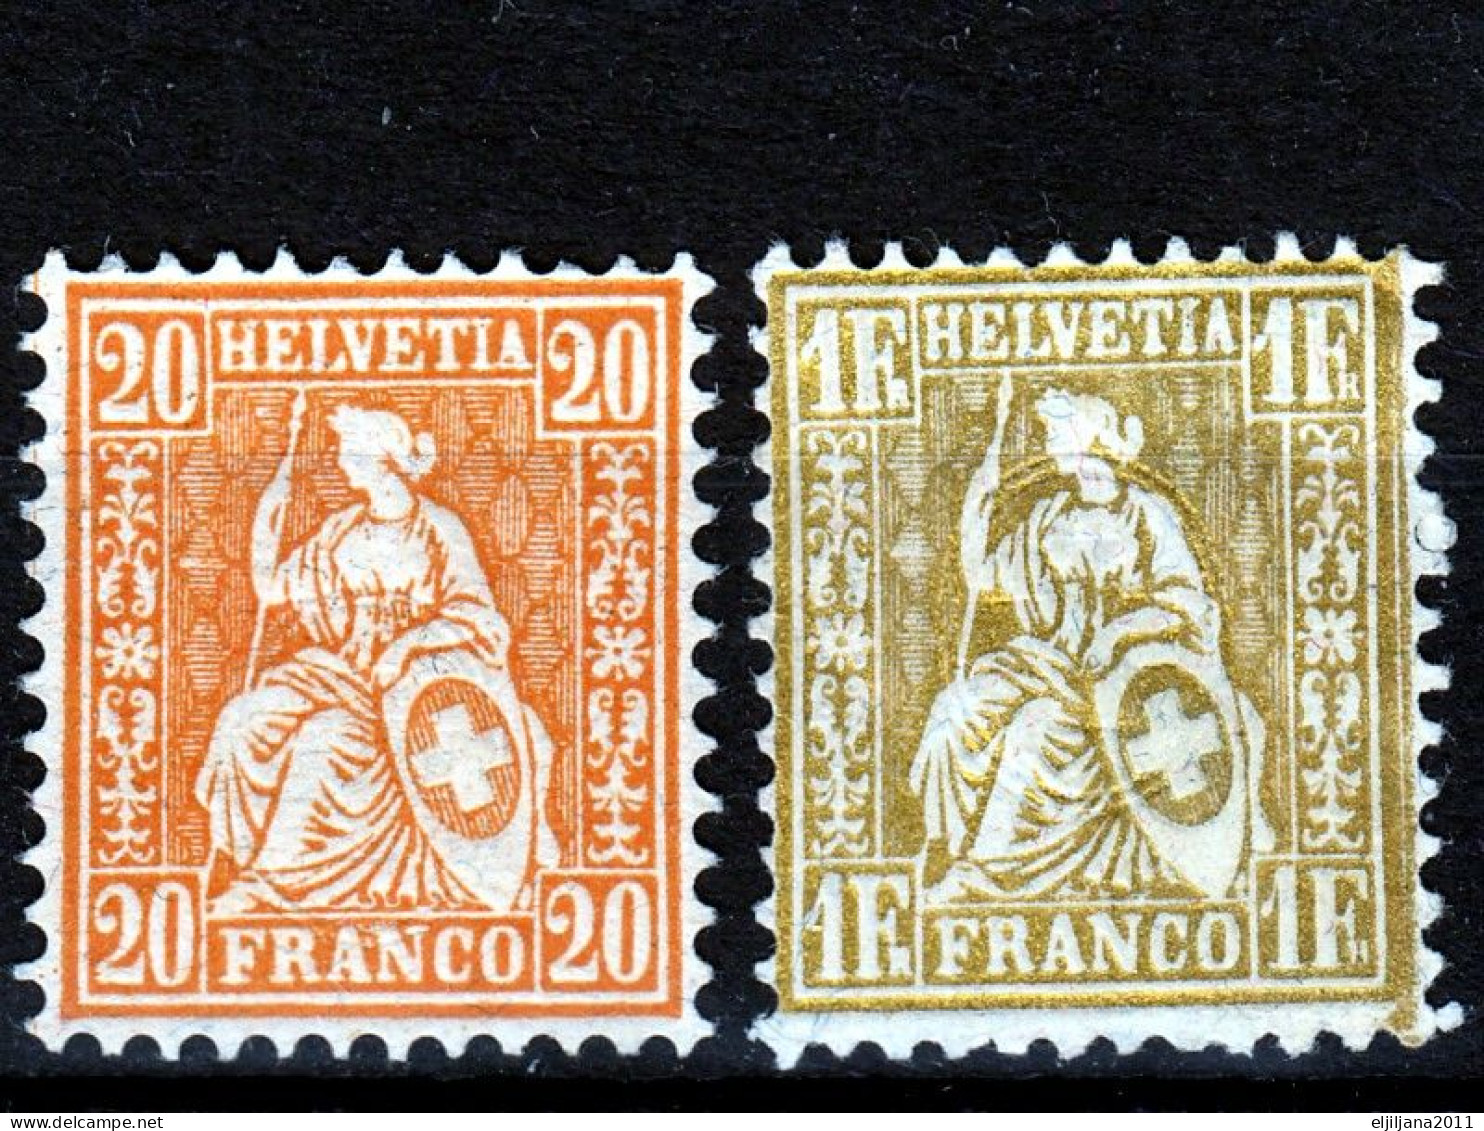 ⁕ Switzerland - SVIZZERA - SUISSE 1862 - 1881 ⁕ SEATED HELVETIA 20 C. & 1 Fr. Franco ⁕ 2v Unused - No Gum - Ongebruikt